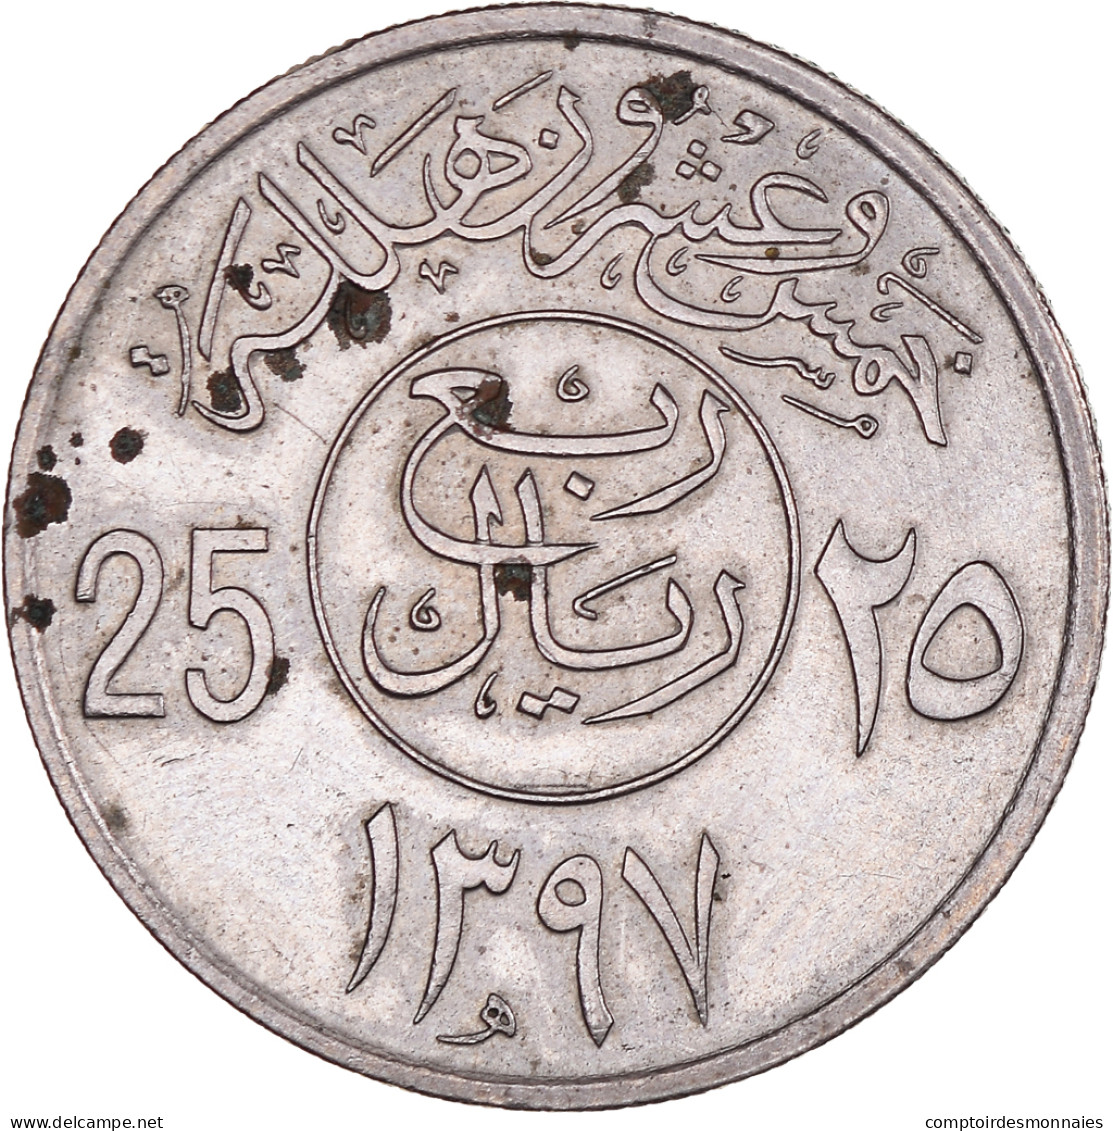 Monnaie, Arabie Saoudite, UNITED KINGDOMS, 25 Halala, 1/4 Riyal, 1972, TTB+ - Saudi Arabia